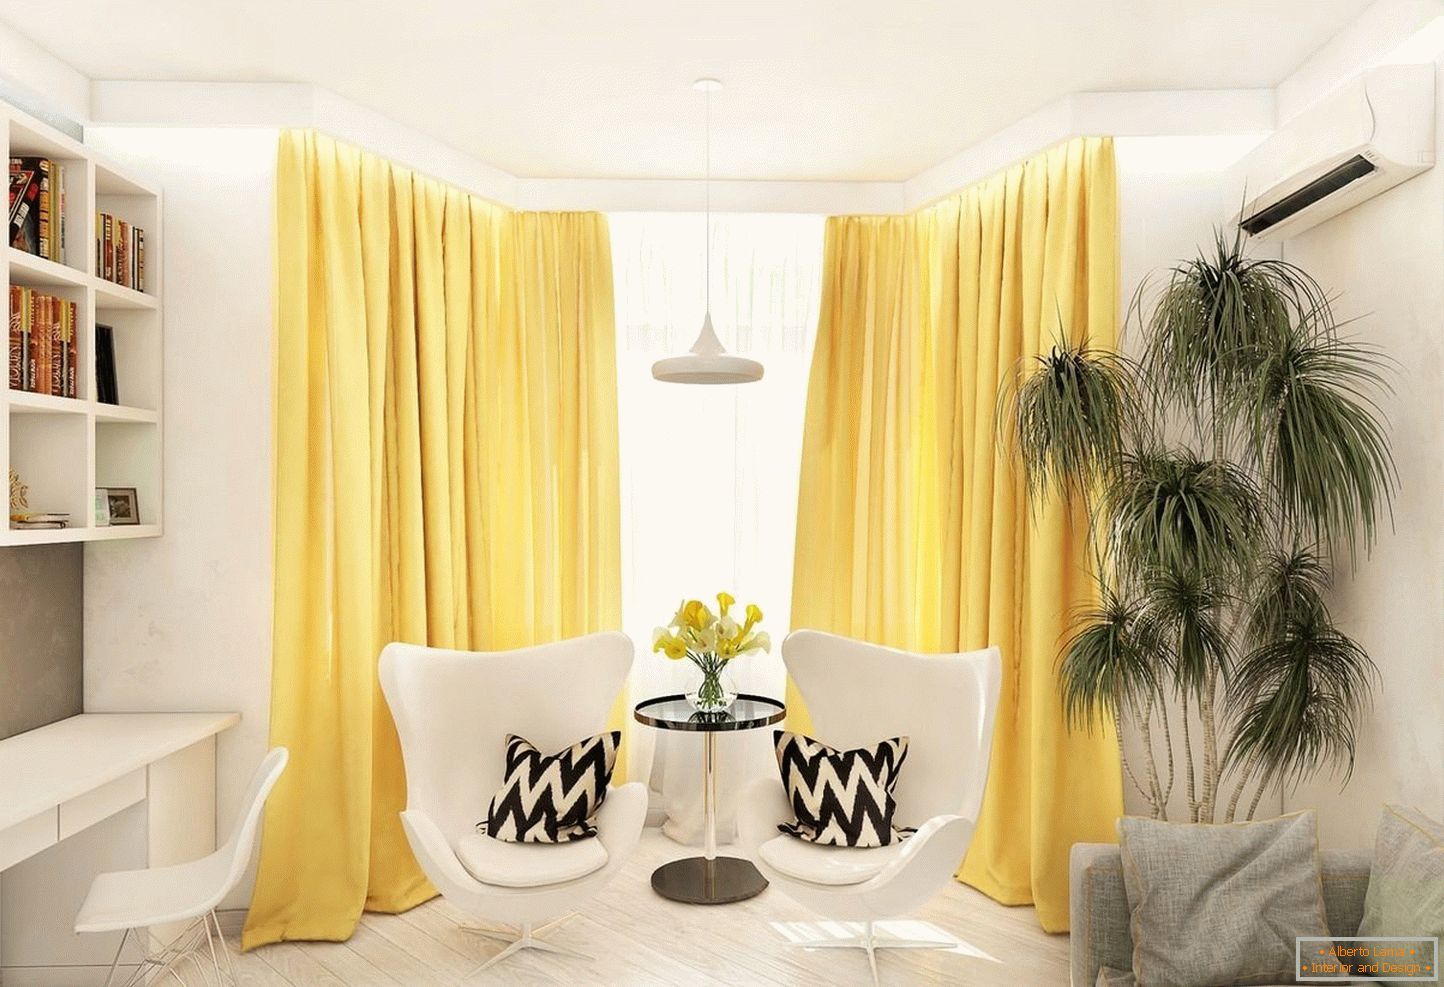 Sárga függönyök a fehér nappaliban